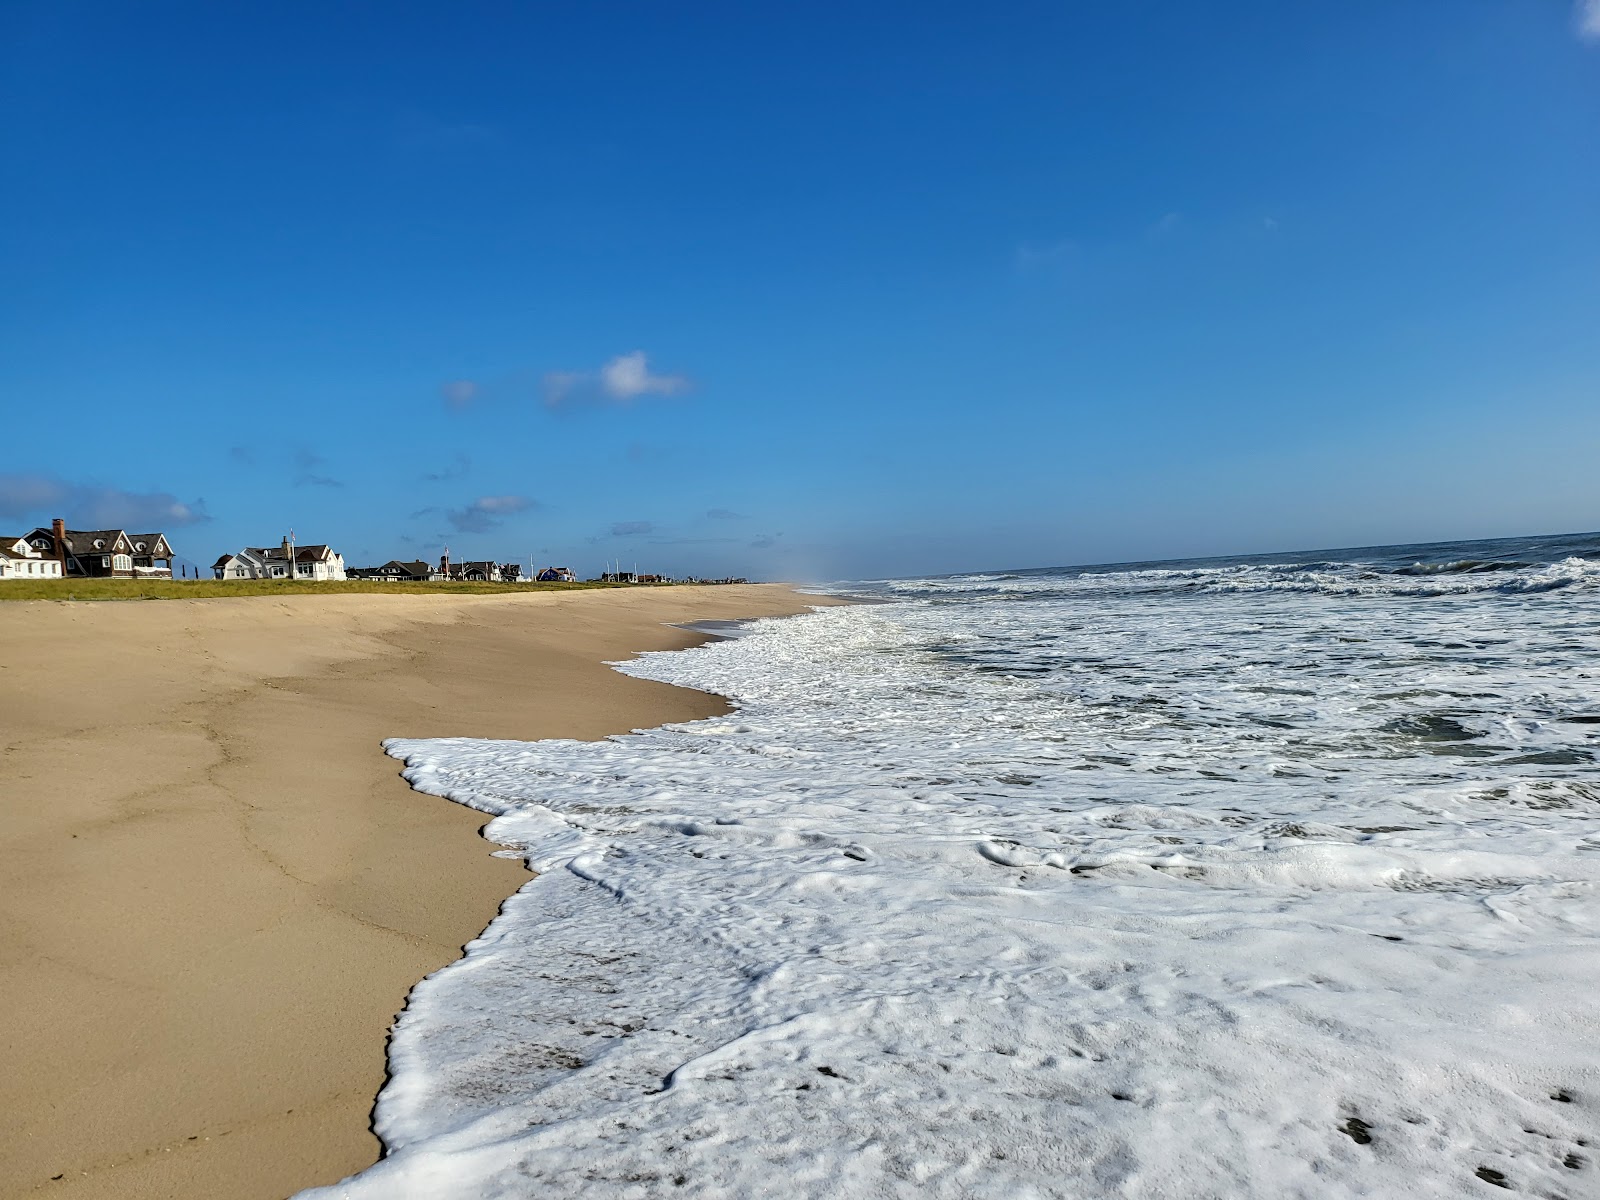 Φωτογραφία του Lyman Str. Beach με φωτεινή άμμος επιφάνεια